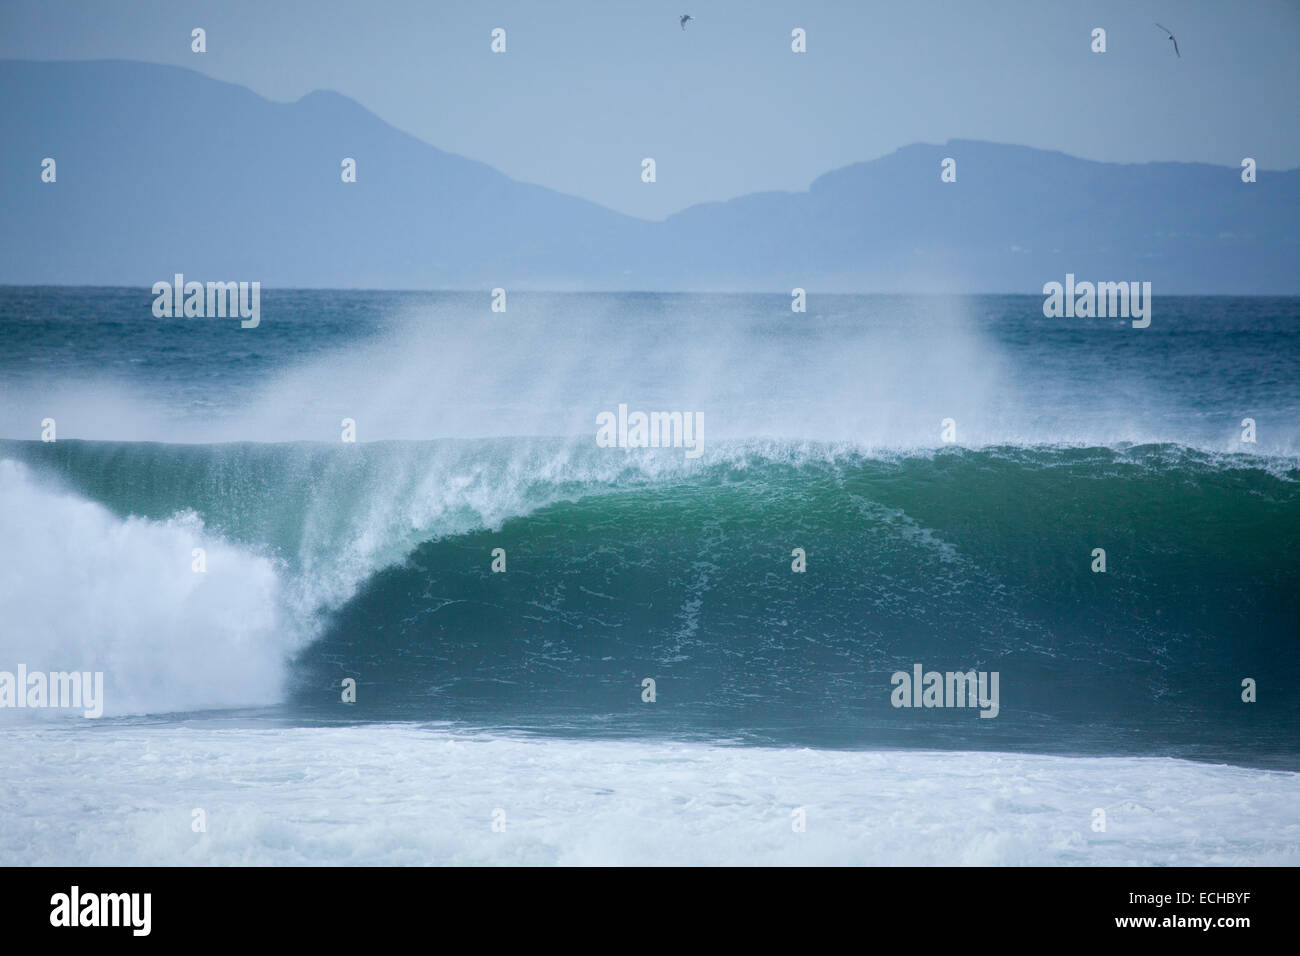 La rupture de l'onde à un spot de surf à Bundoran, Donegal Bay, comté de Donegal, Irlande. Banque D'Images